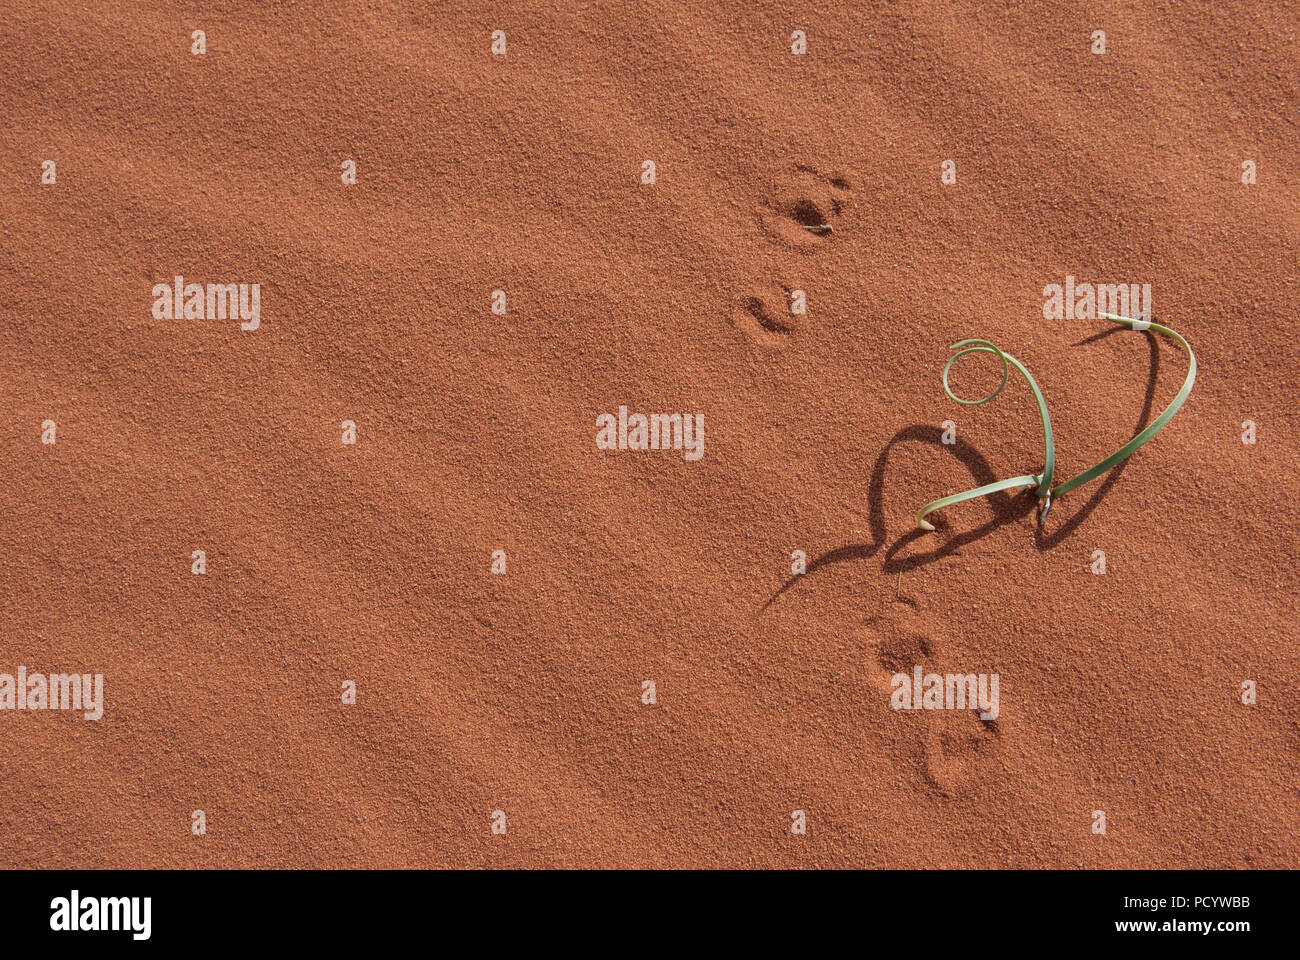 Pianta verde crescente in rosso deserto di sabbia con le ombre e le orme, successo nella regione arida Foto Stock